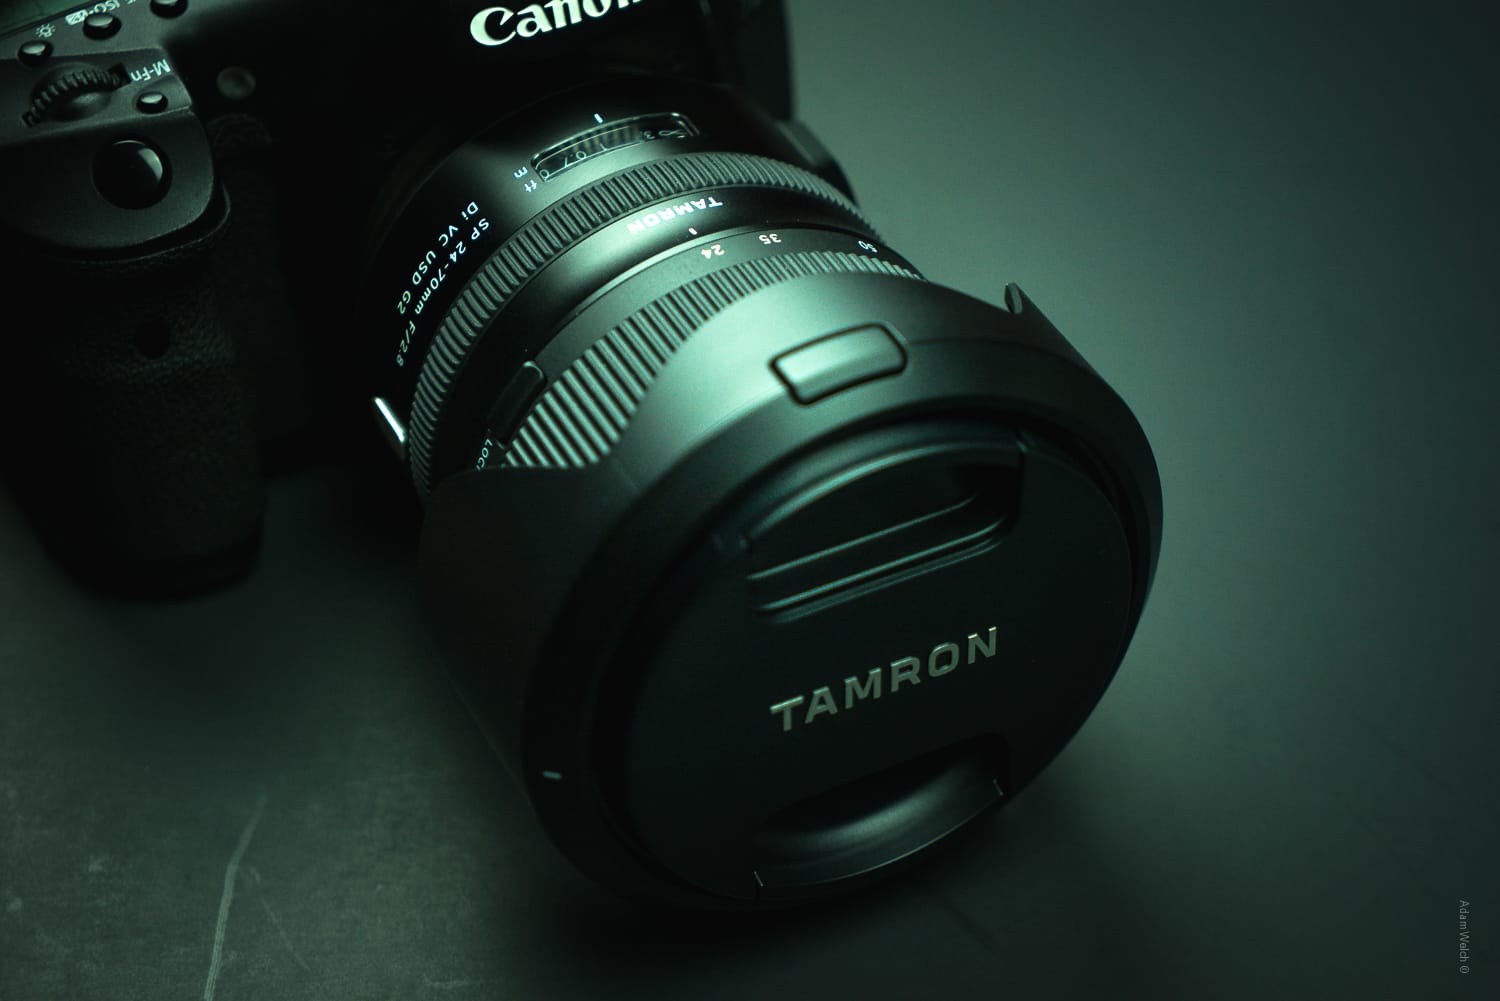 Tamron 24-70mm G2